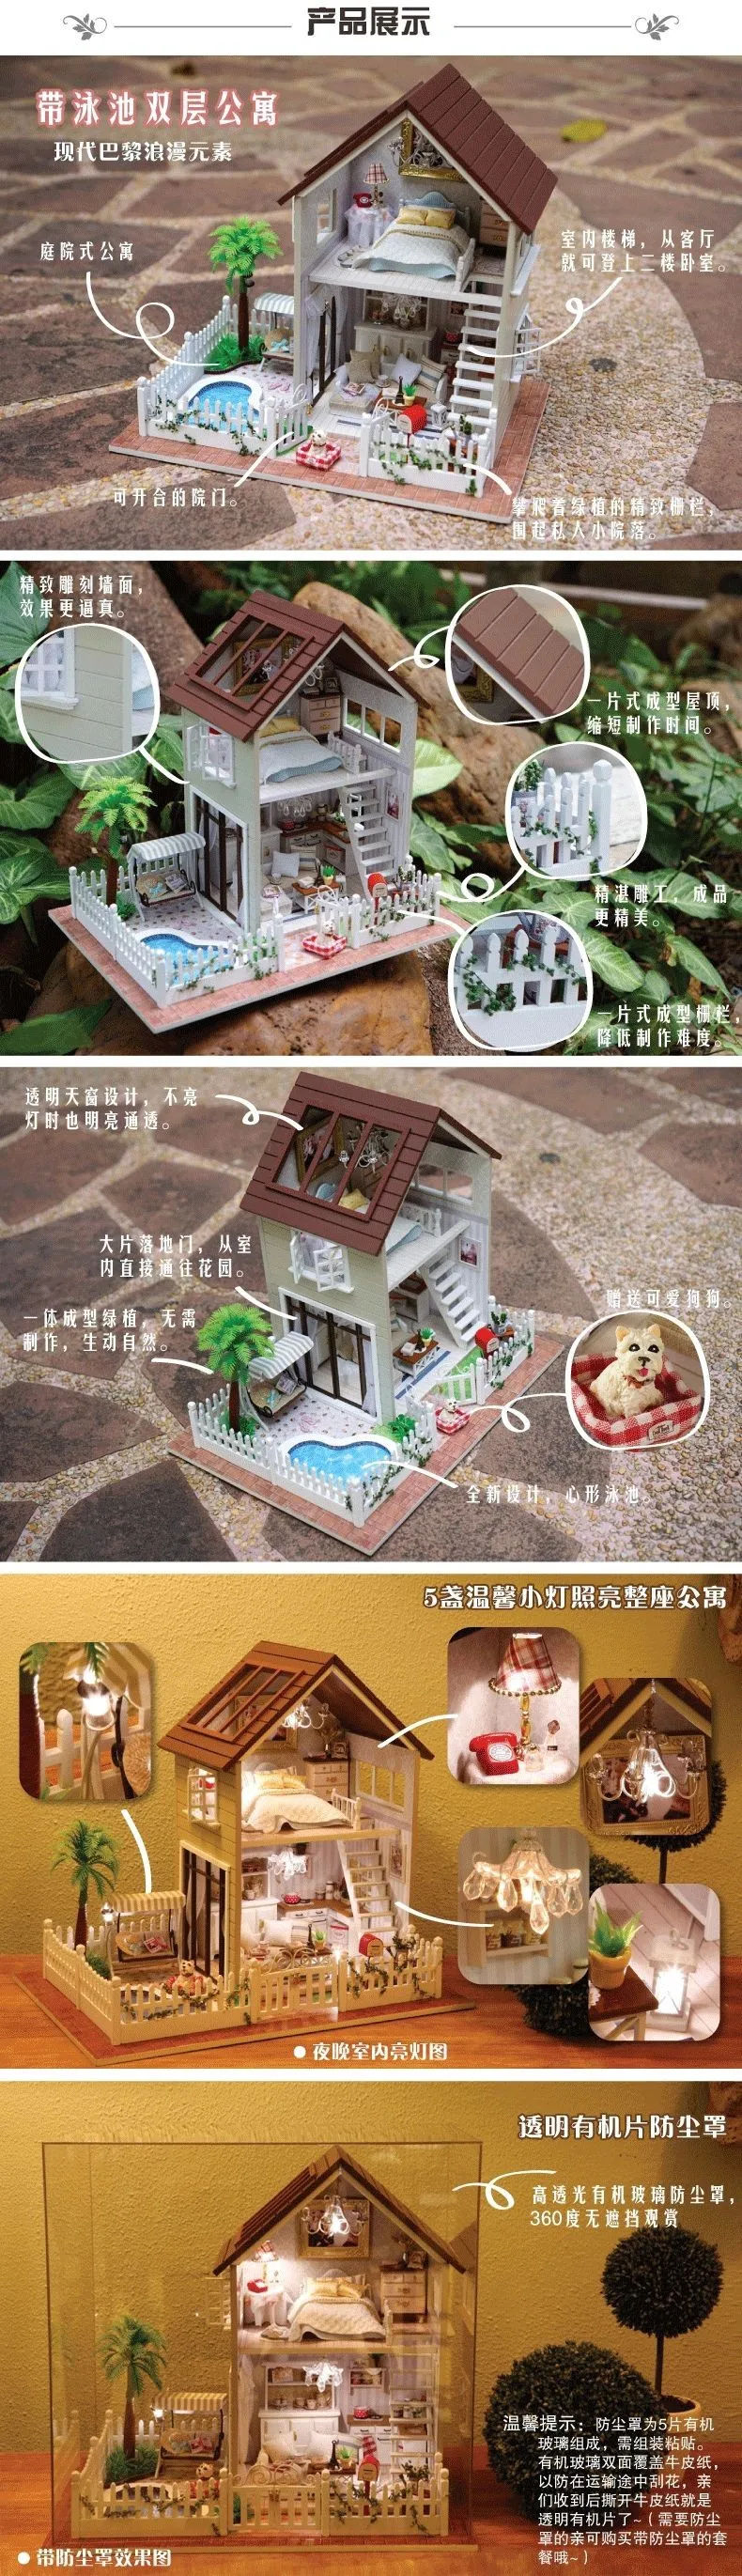 Diy 1/12 3D Деревянный Кукольный дом миниатюрная мебель деревянный кукольный светильник кукольный домик Миниатюрный дом игрушка Подарки игрушечные дома подарок на день рождения